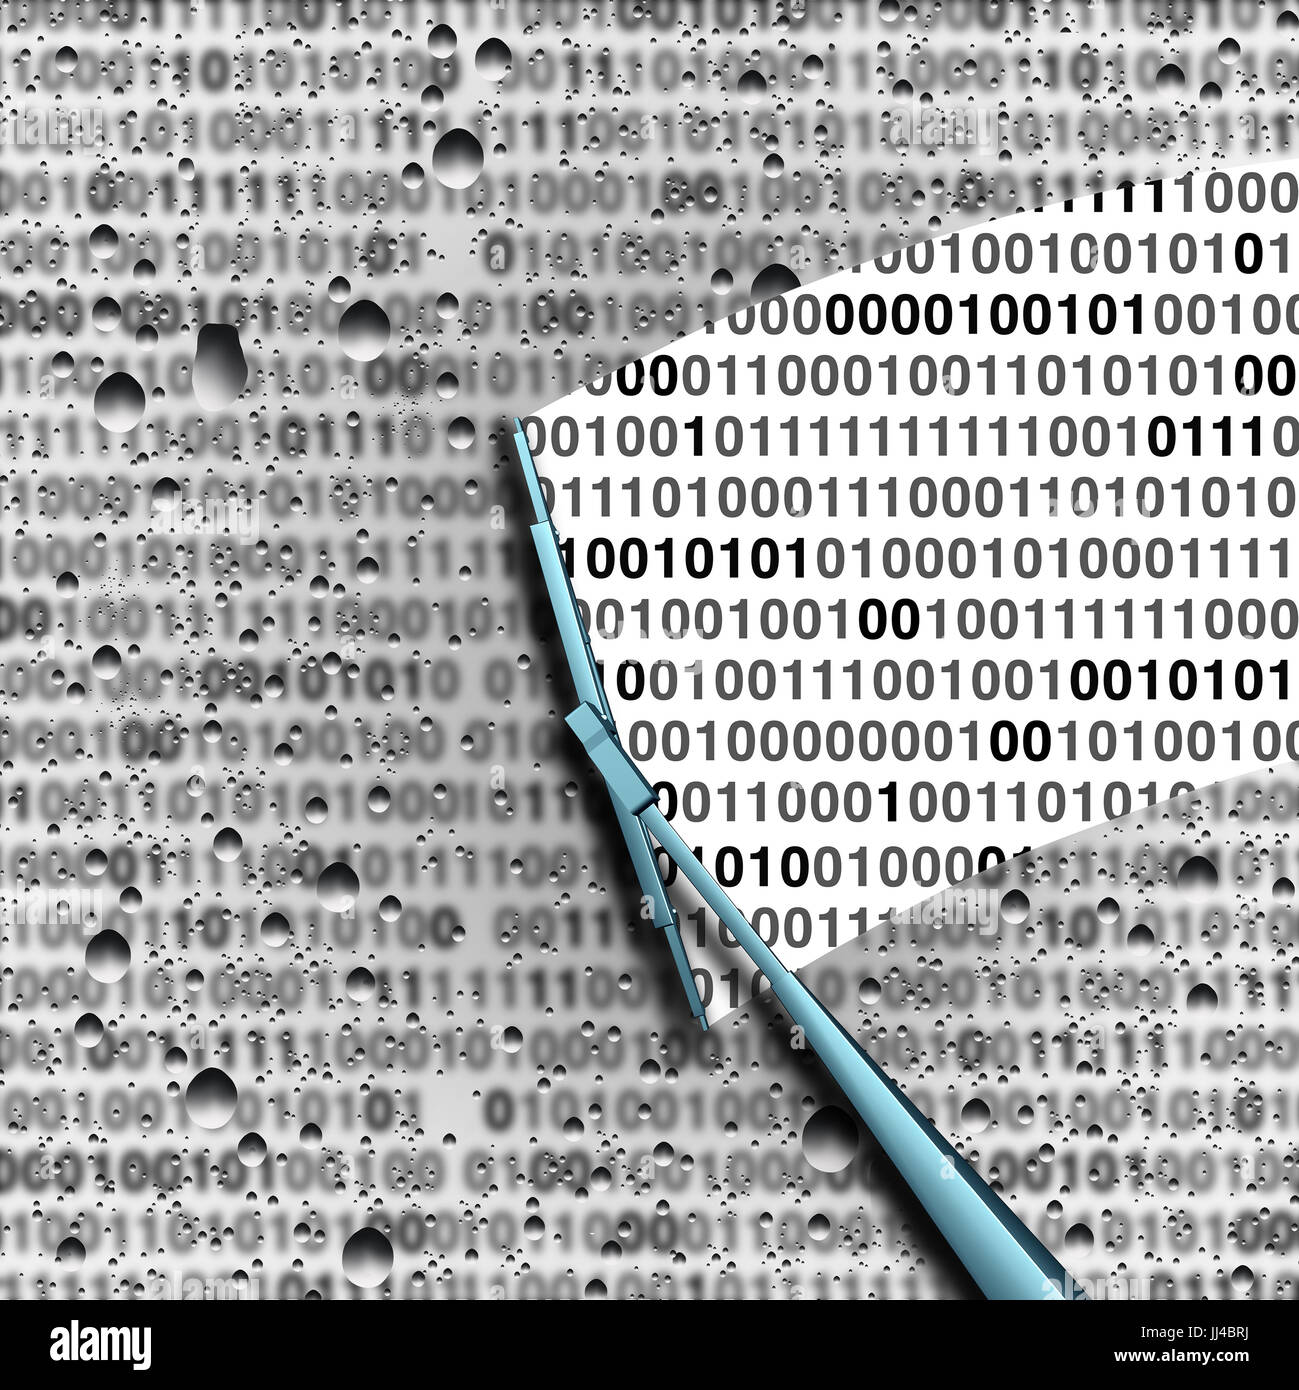 Analisi dei dati o computer hacking concetto come sfocata codice binario con un tergicristallo che identifica le informazioni private come una tecnologia di sicurezza simbolo. Foto Stock